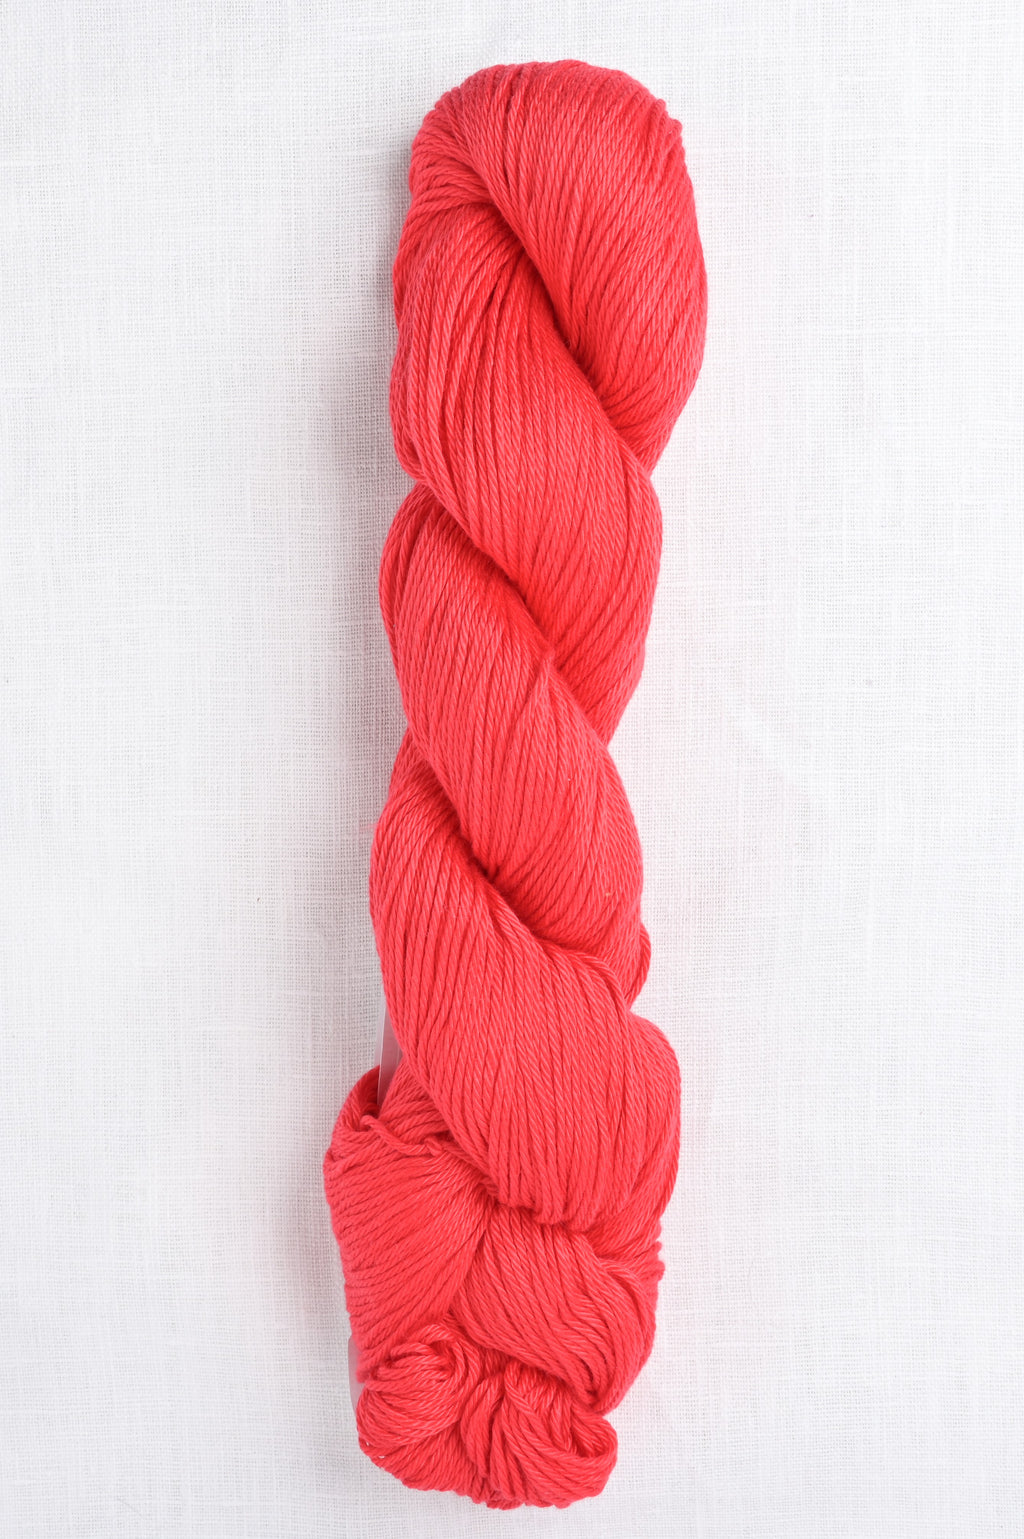 Red Yarn 